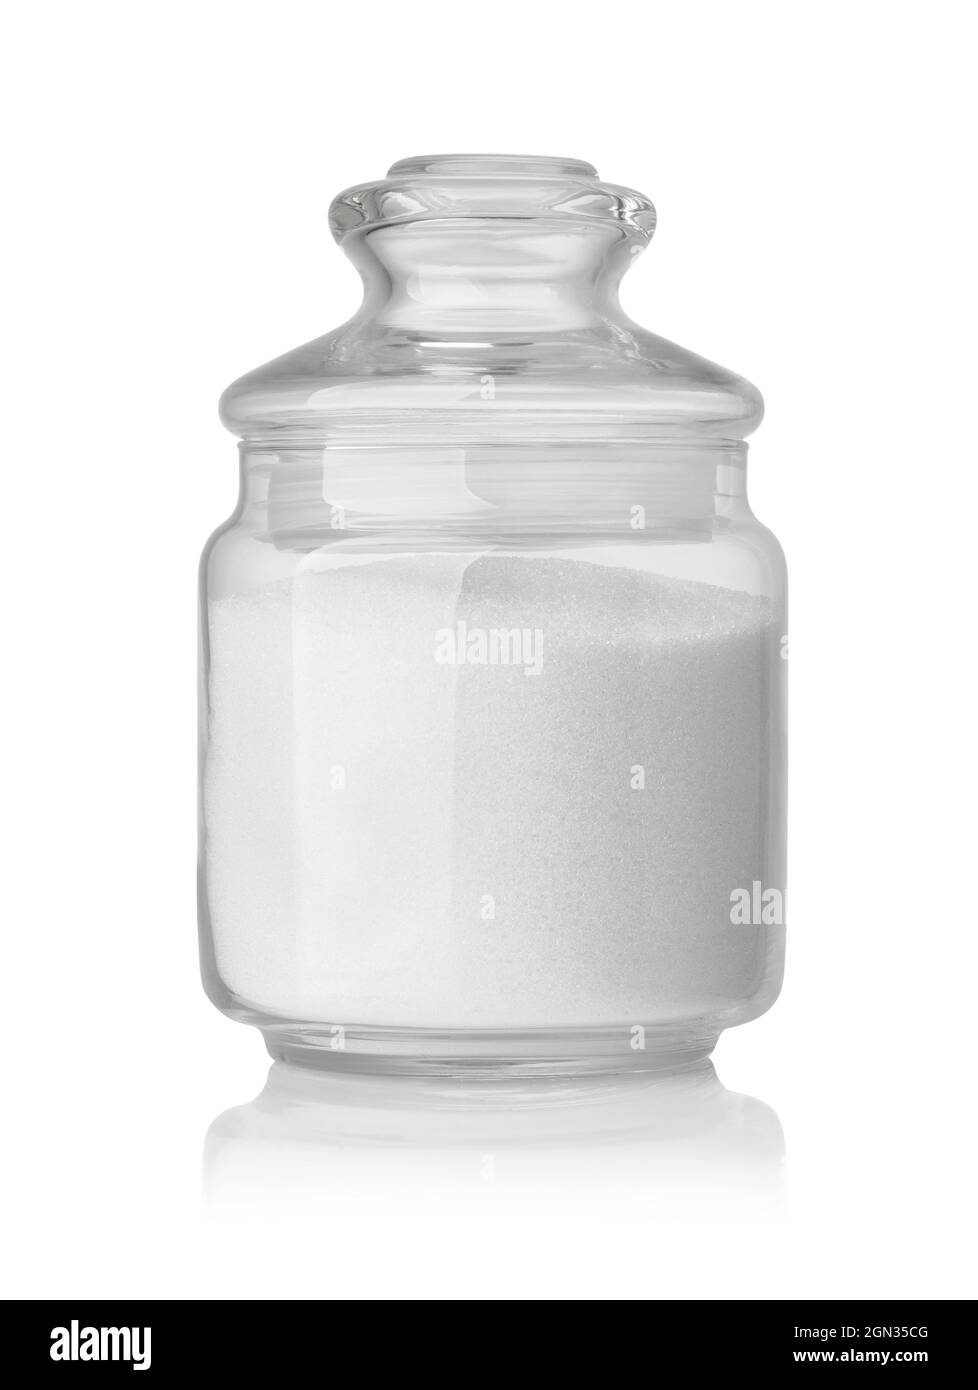 Vorderansicht des raffinierten Granulatzuckers in einem Glas, das auf Weiß isoliert ist Stockfoto